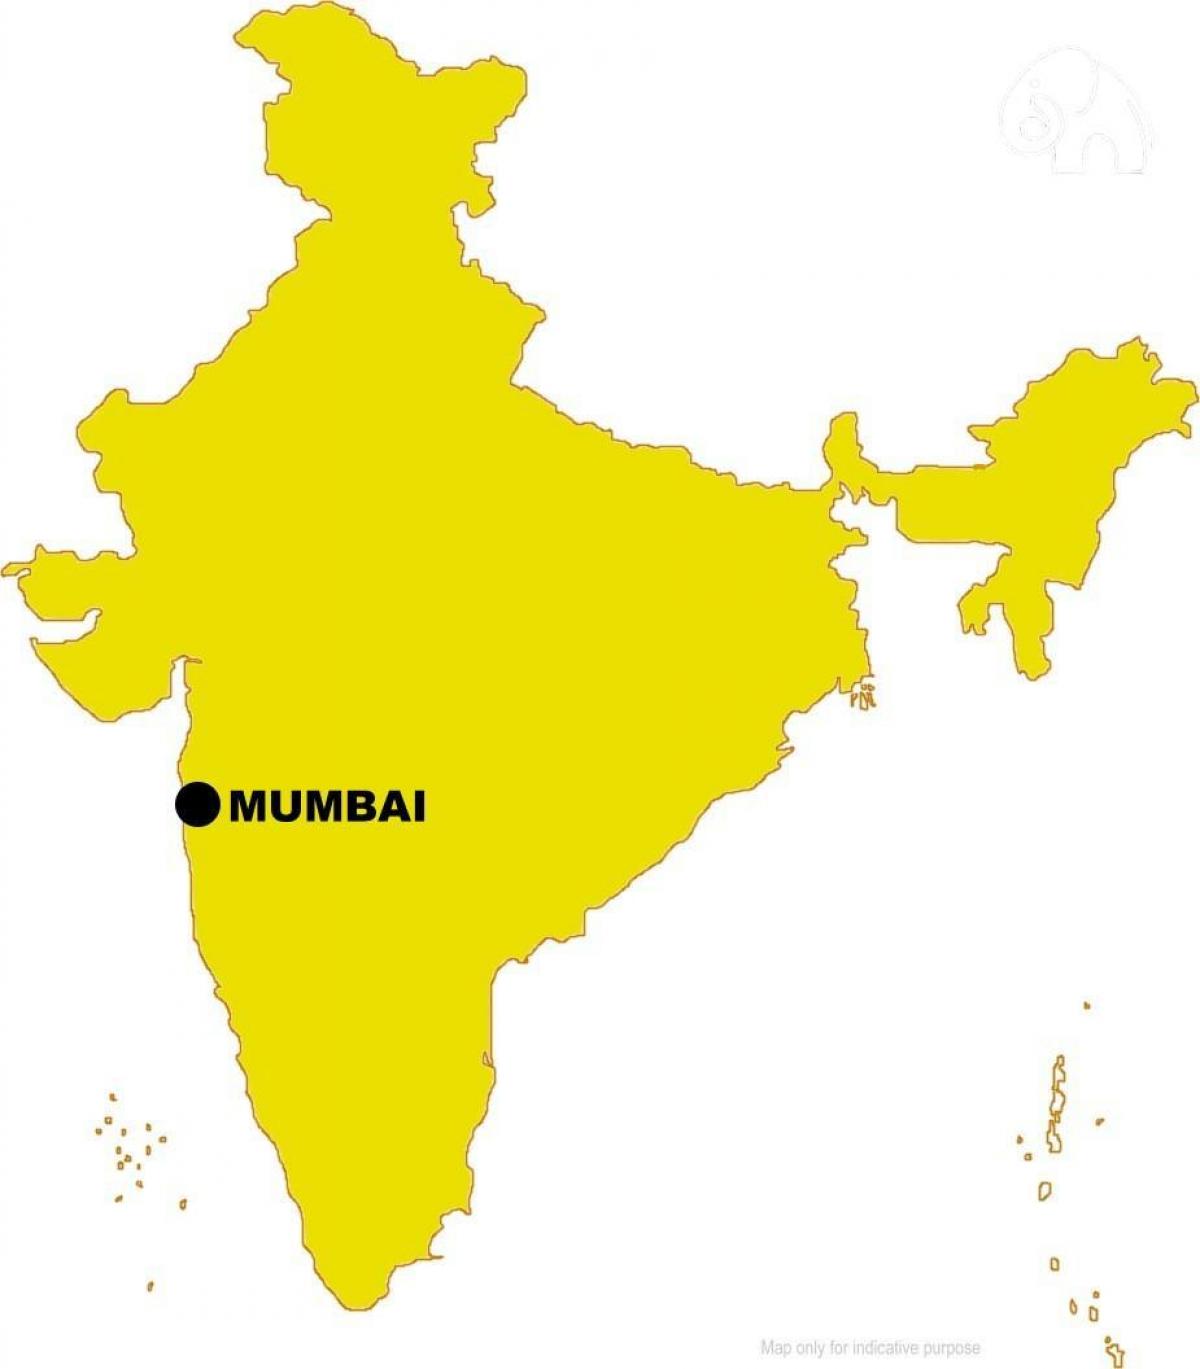 Mumbai trong bản đồ